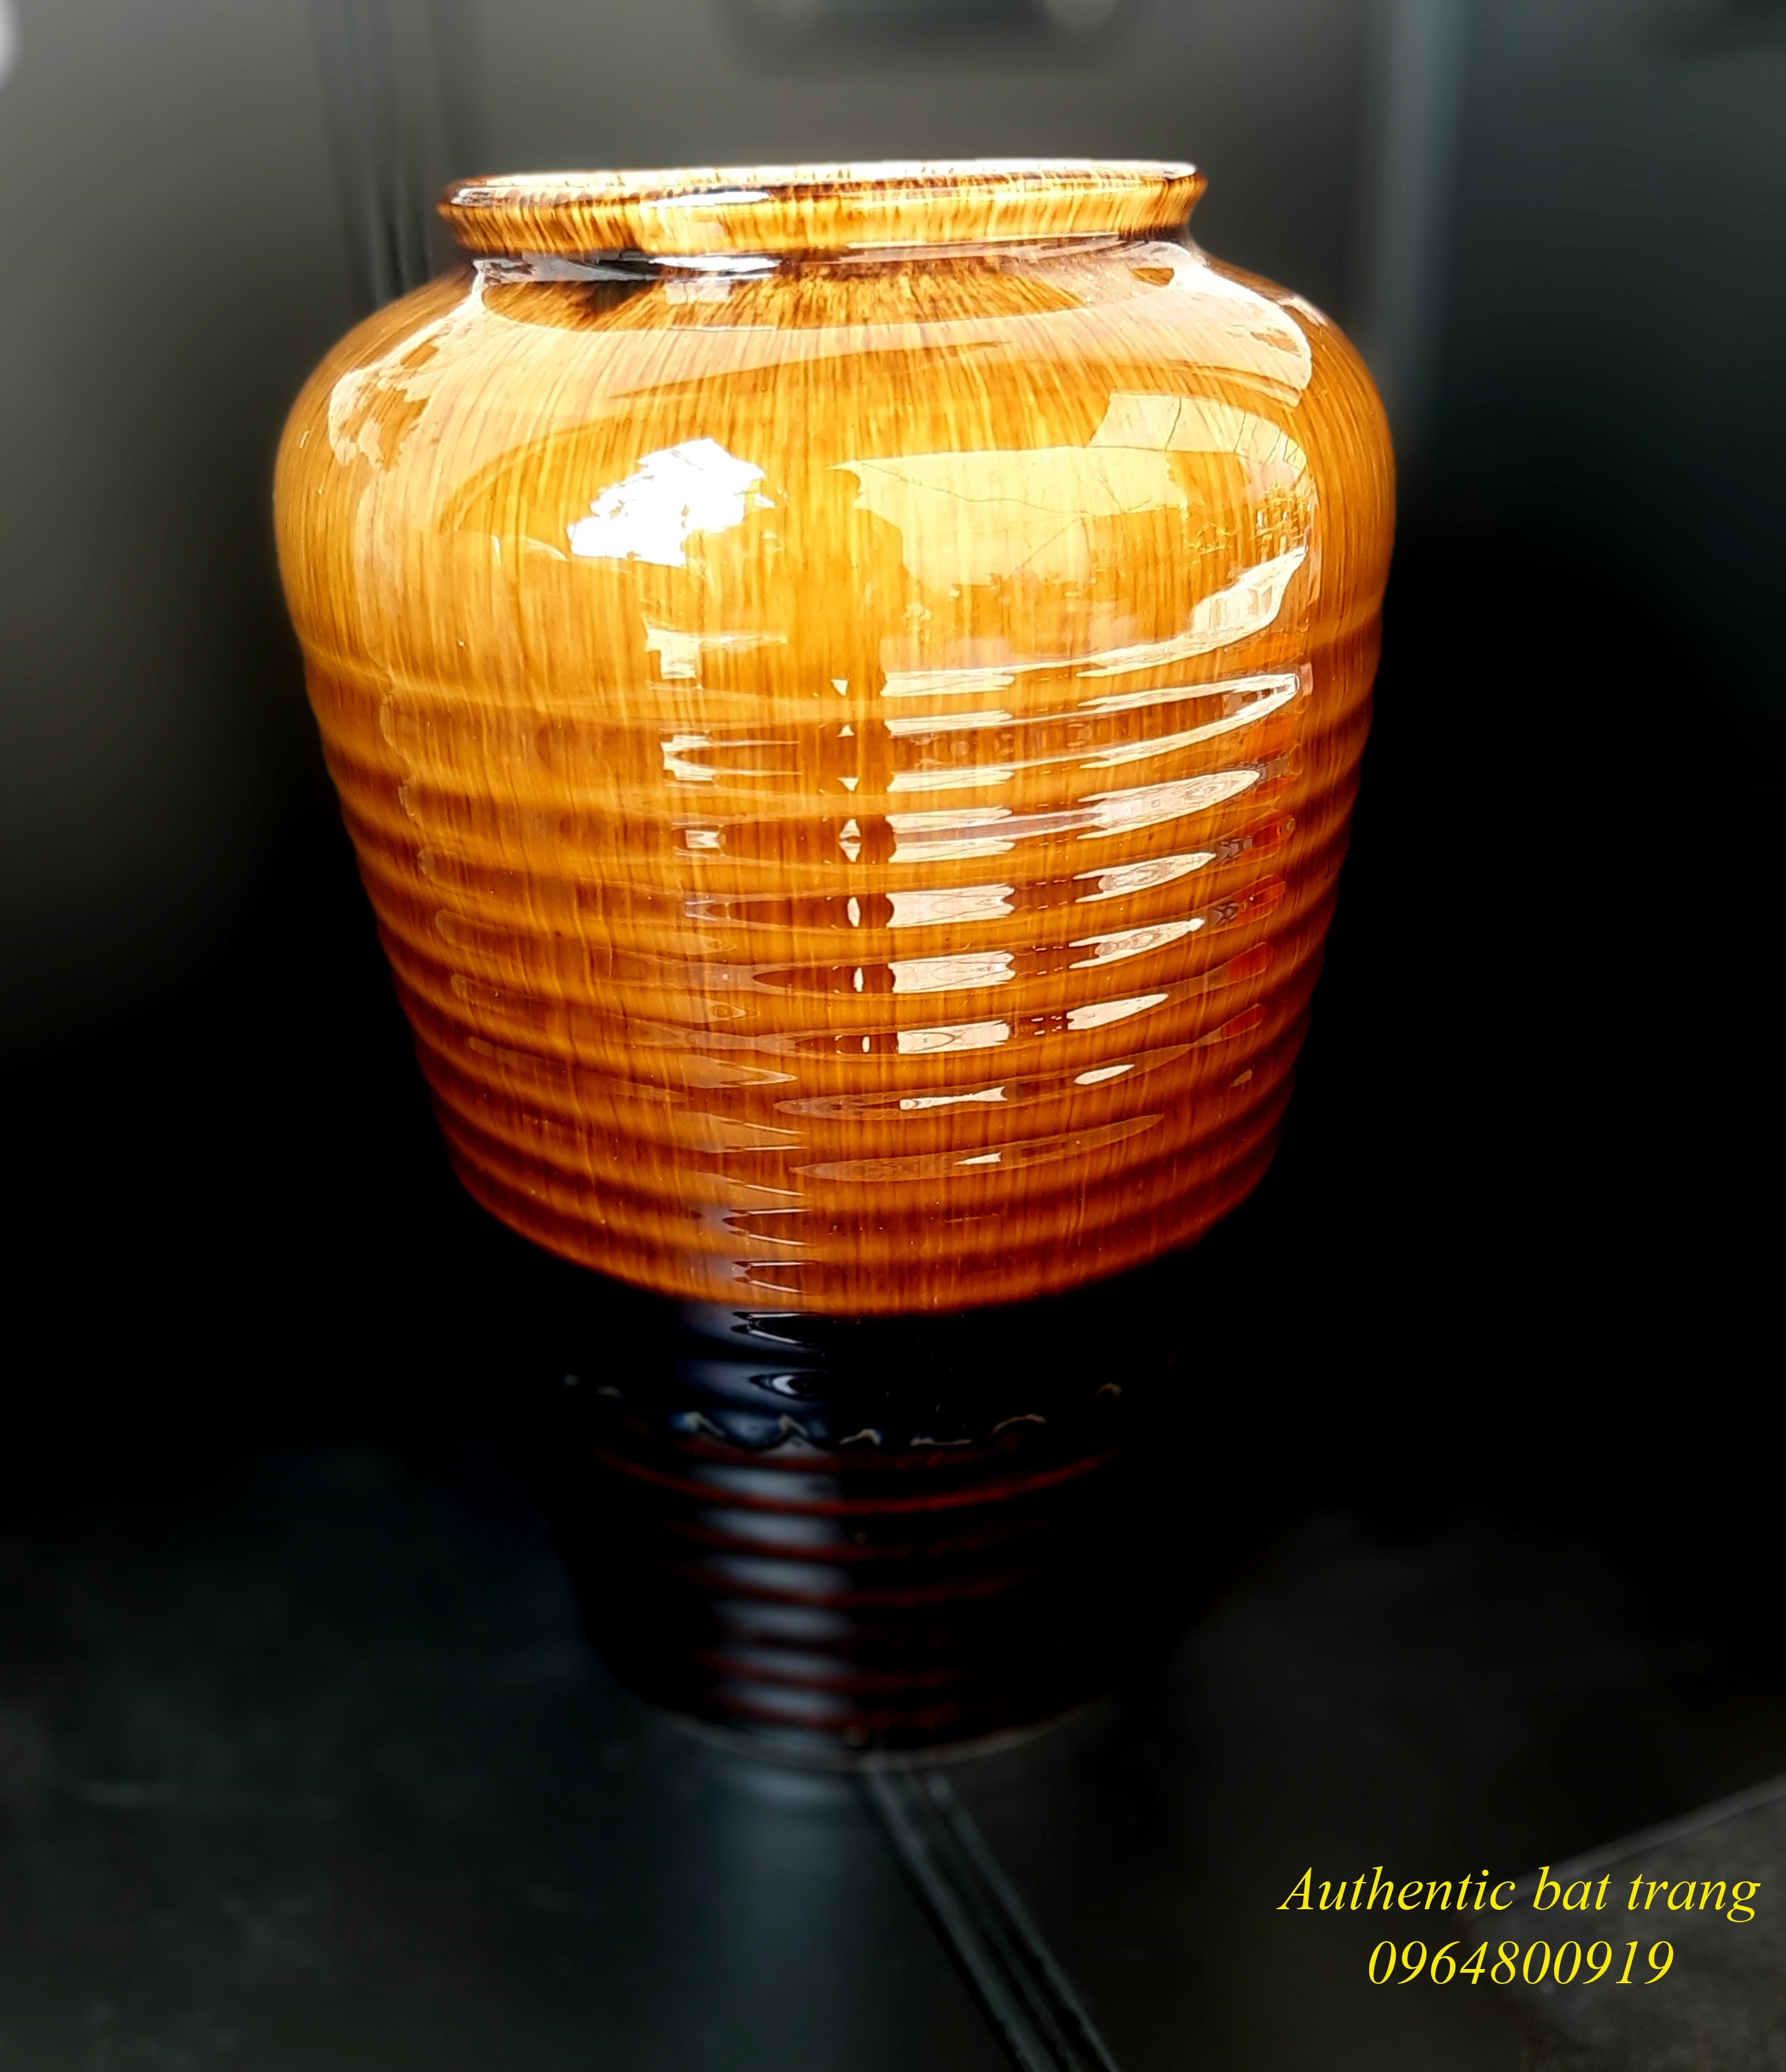 Big ceramics vase/ Bình cắm hoa tóc tiên sản phẩm men hỏa biến sản xuất tại xường gốm sứ gia oanh authentic bat trang